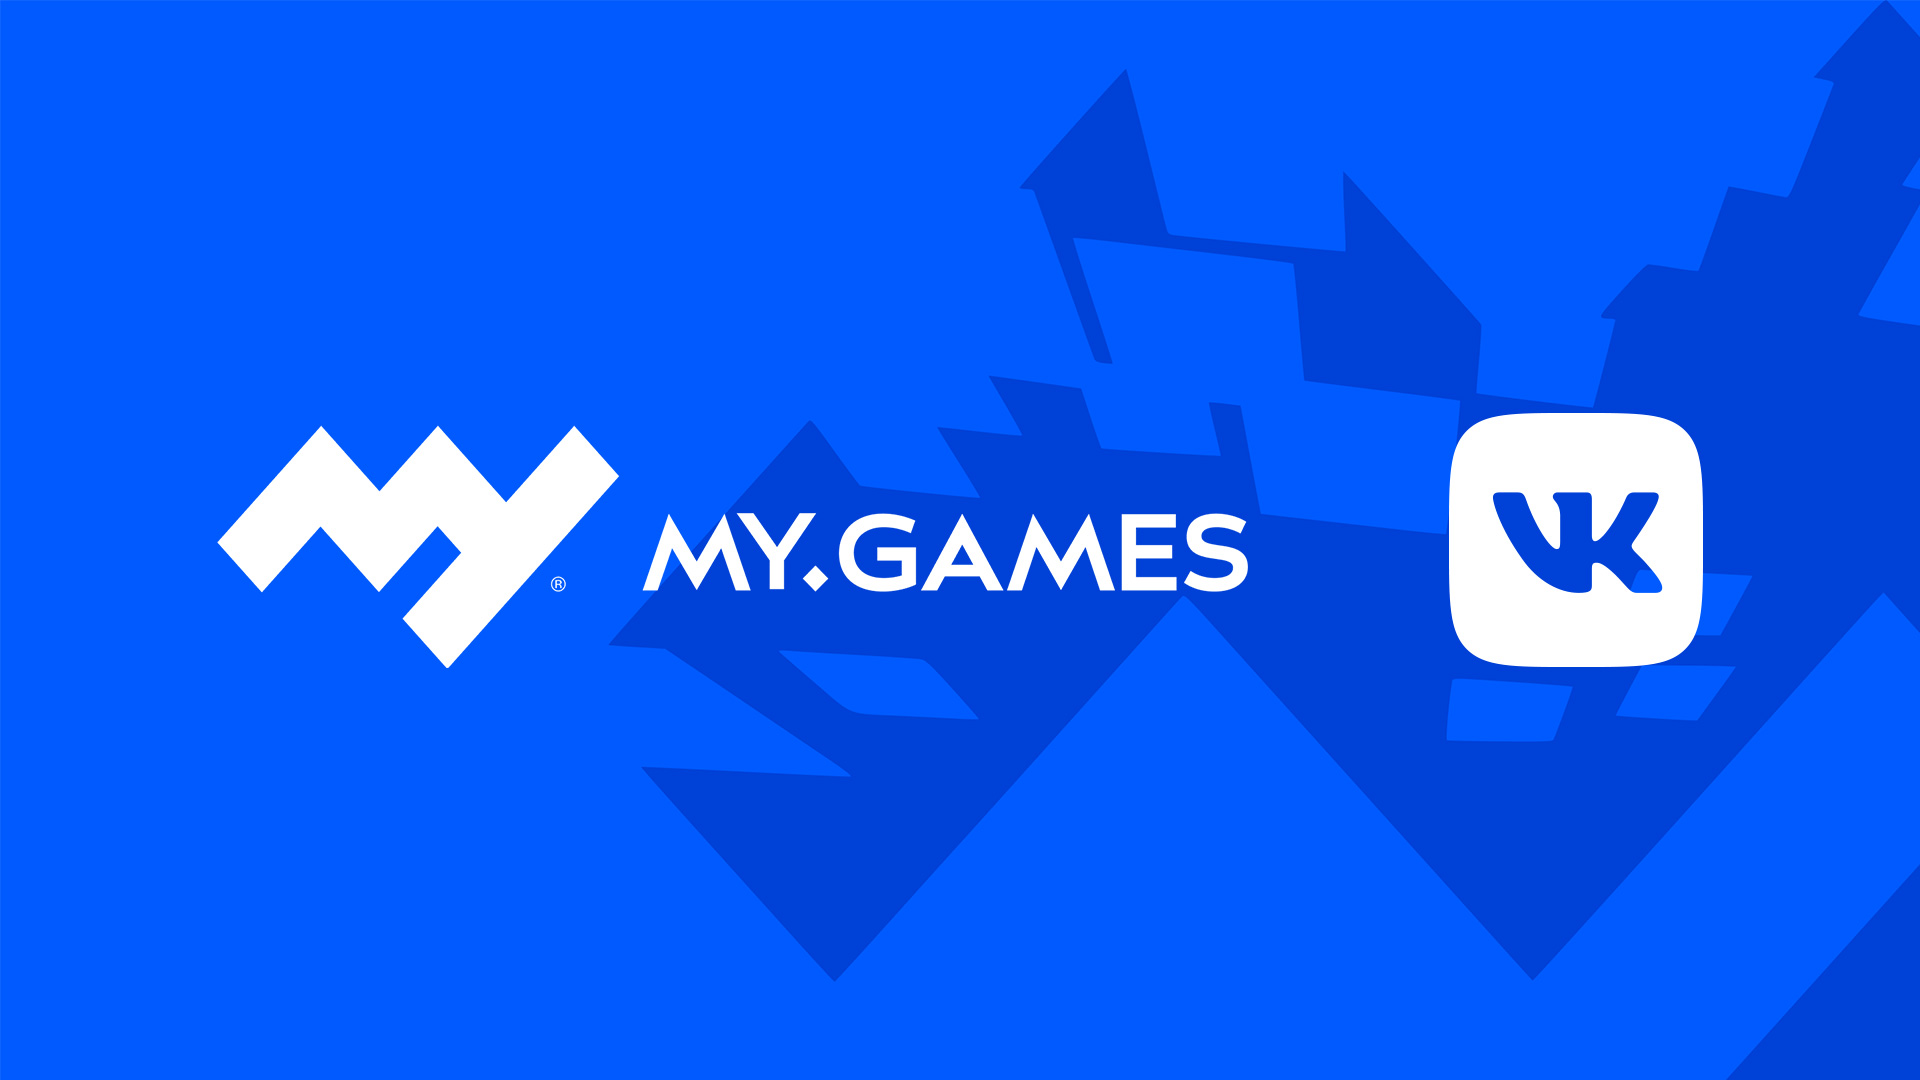 VK продала игровое подразделение MY.GAMES за 642 млн долларов